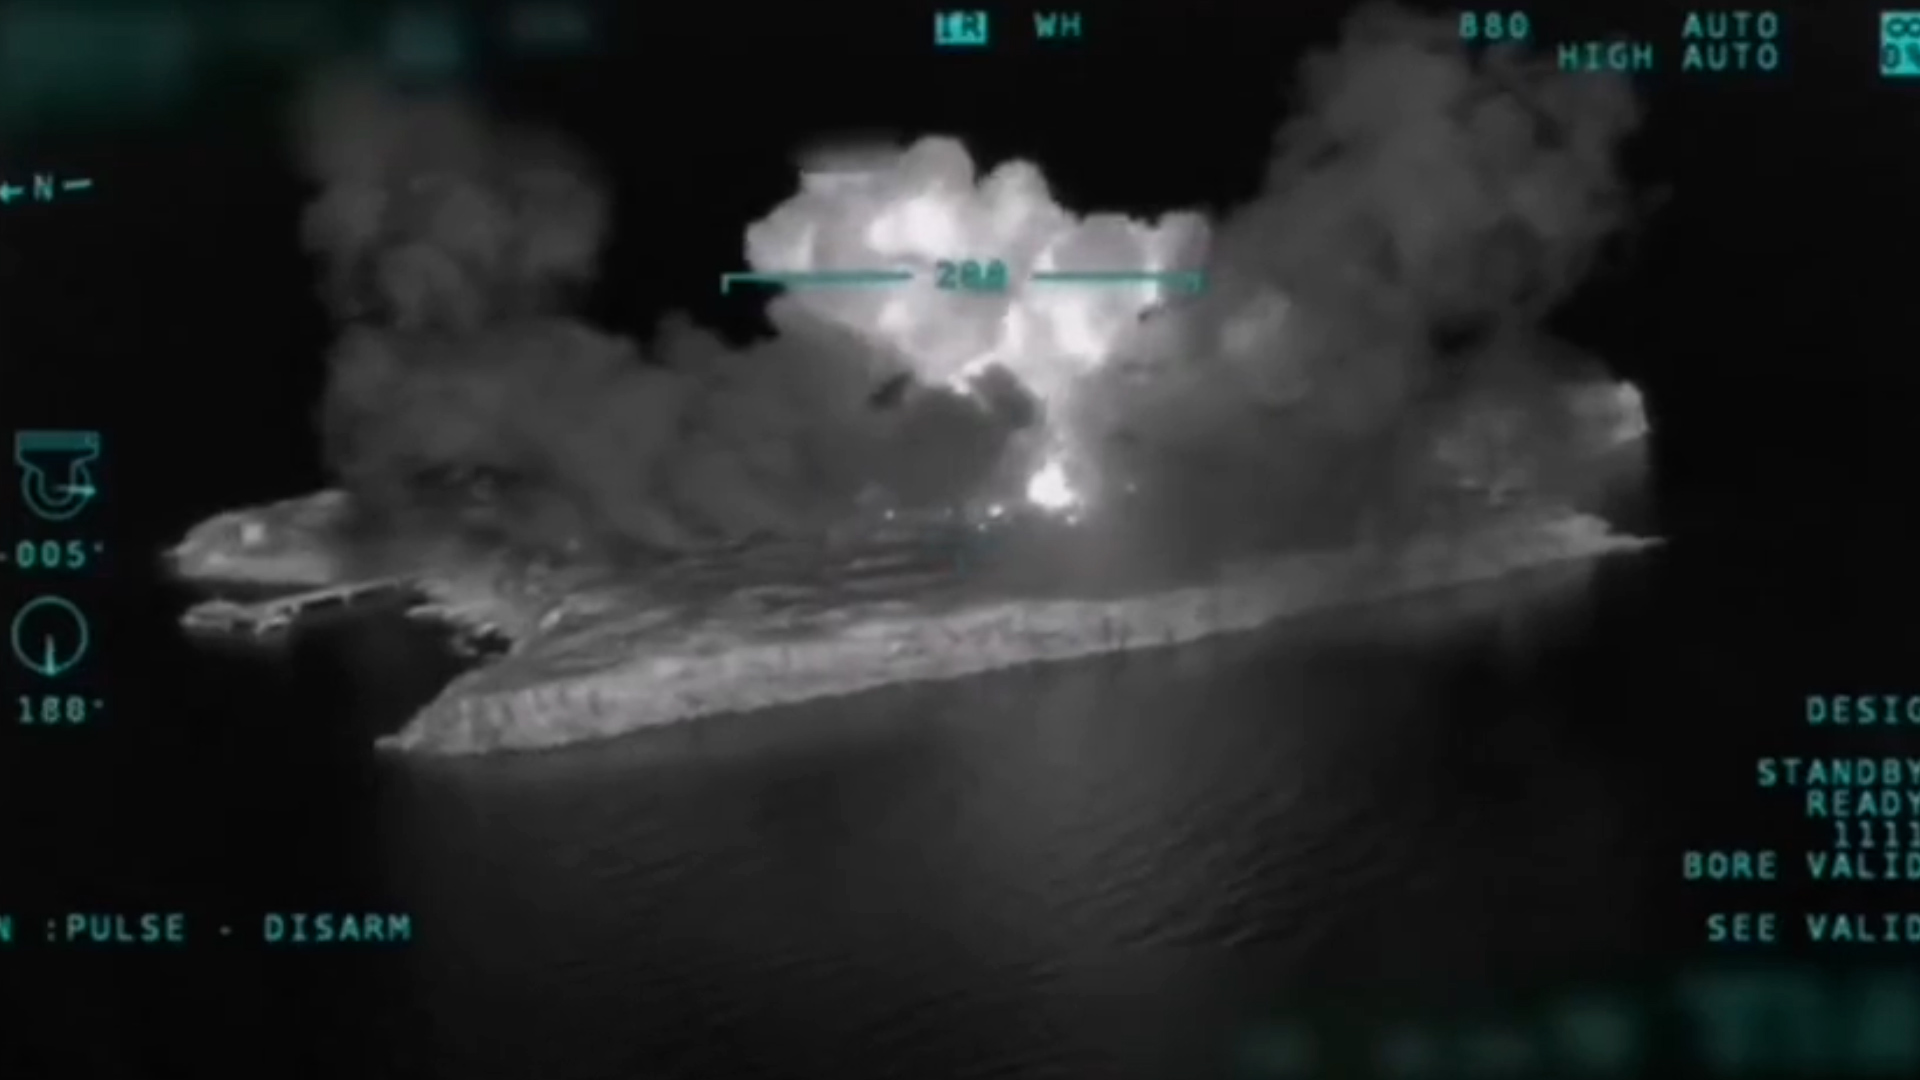 las imágenes del drone muestran una gran explosión final